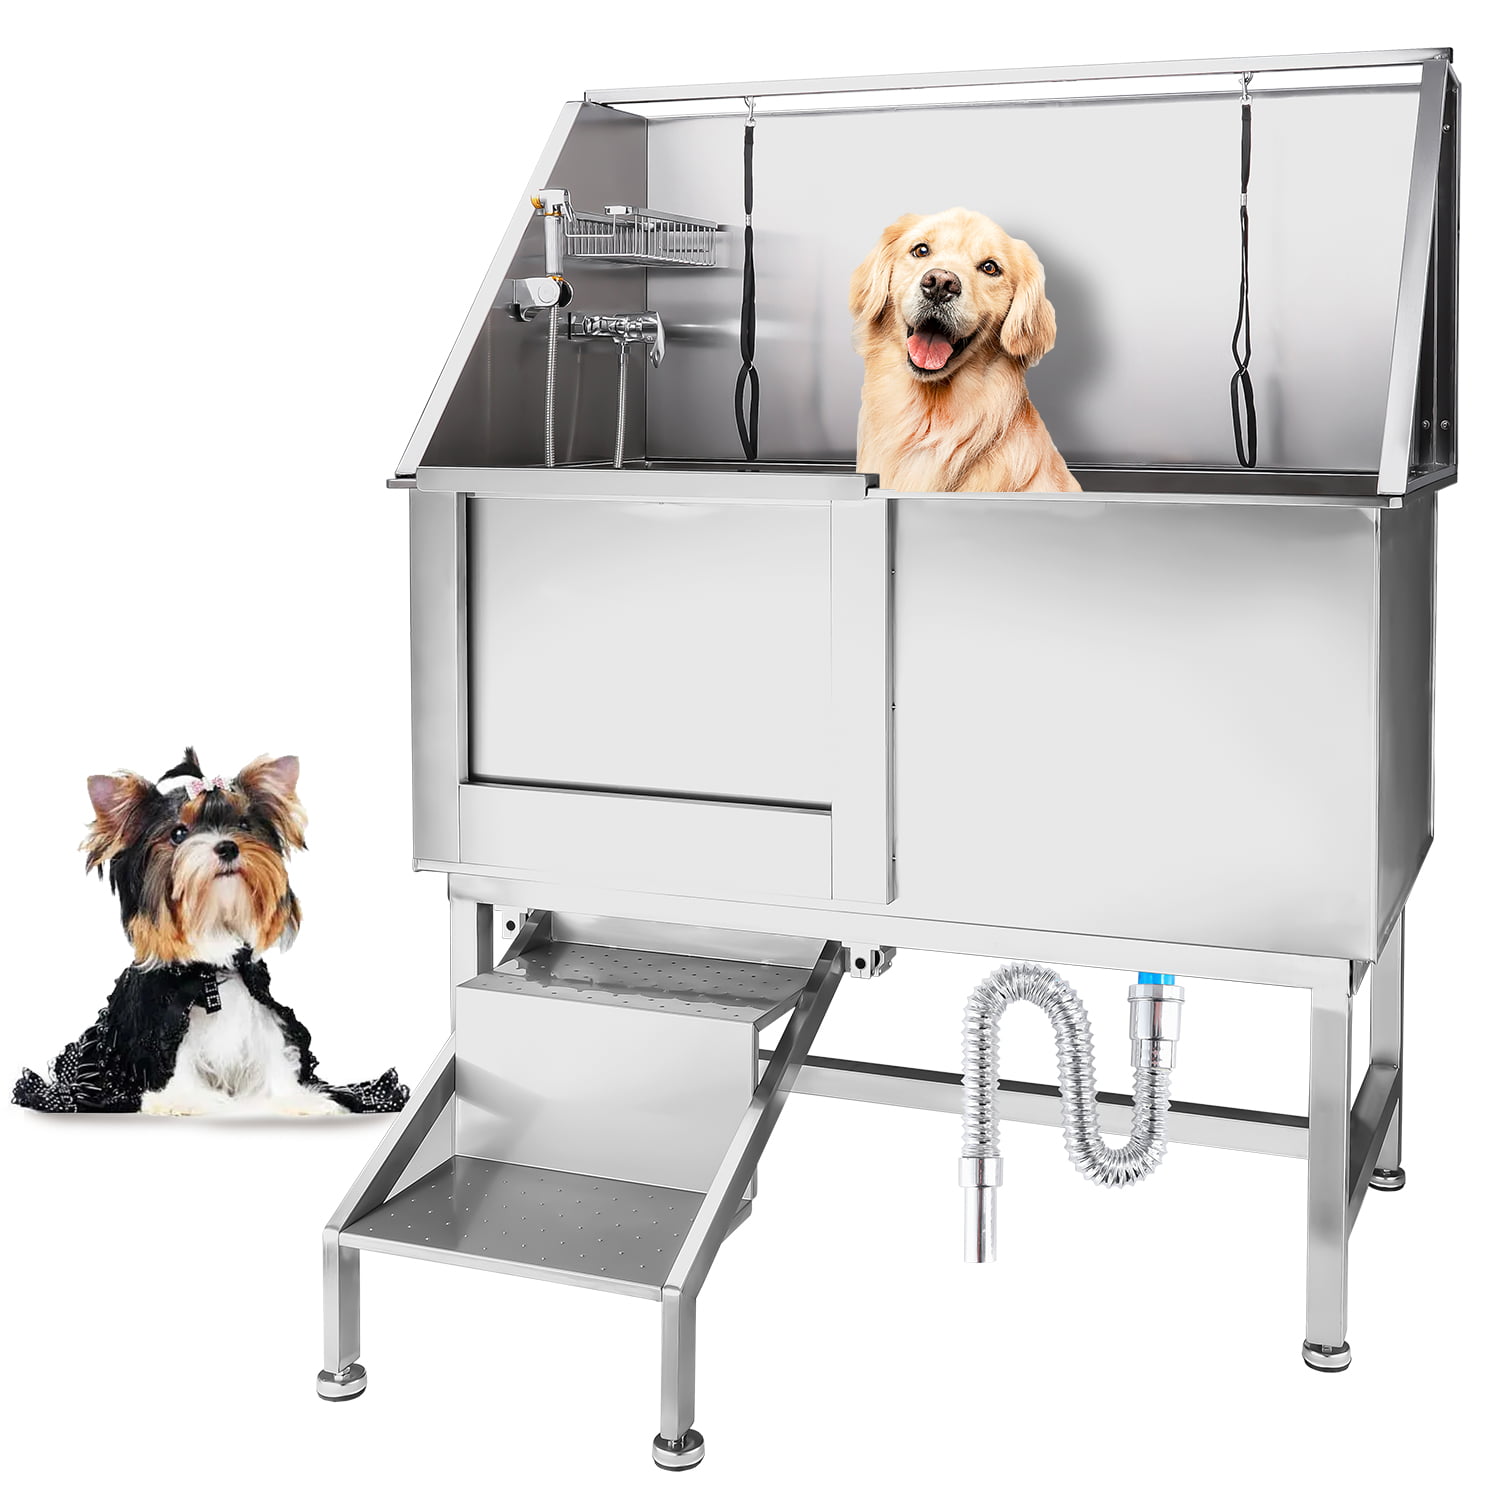 Bañera profesional de acero inoxidable para perros de 50 pulgadas con grifo  de pasos y accesorios, estación de lavado de perros, puerta derecha